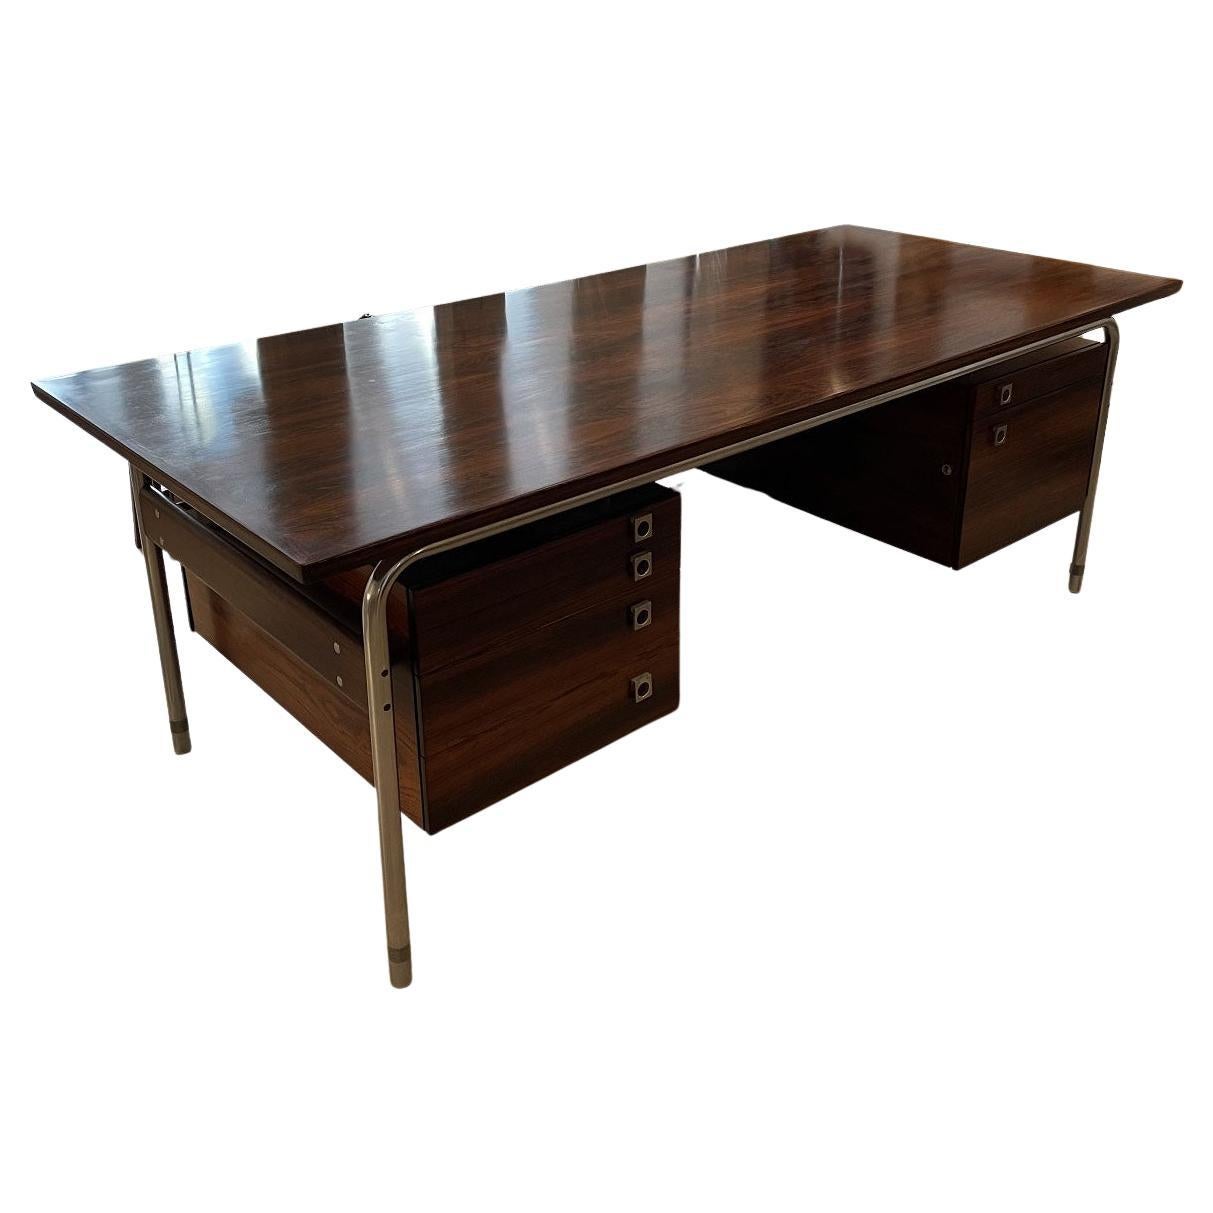 Arne Vodder Desk for Sibast – Rosewood and Metal For Sale